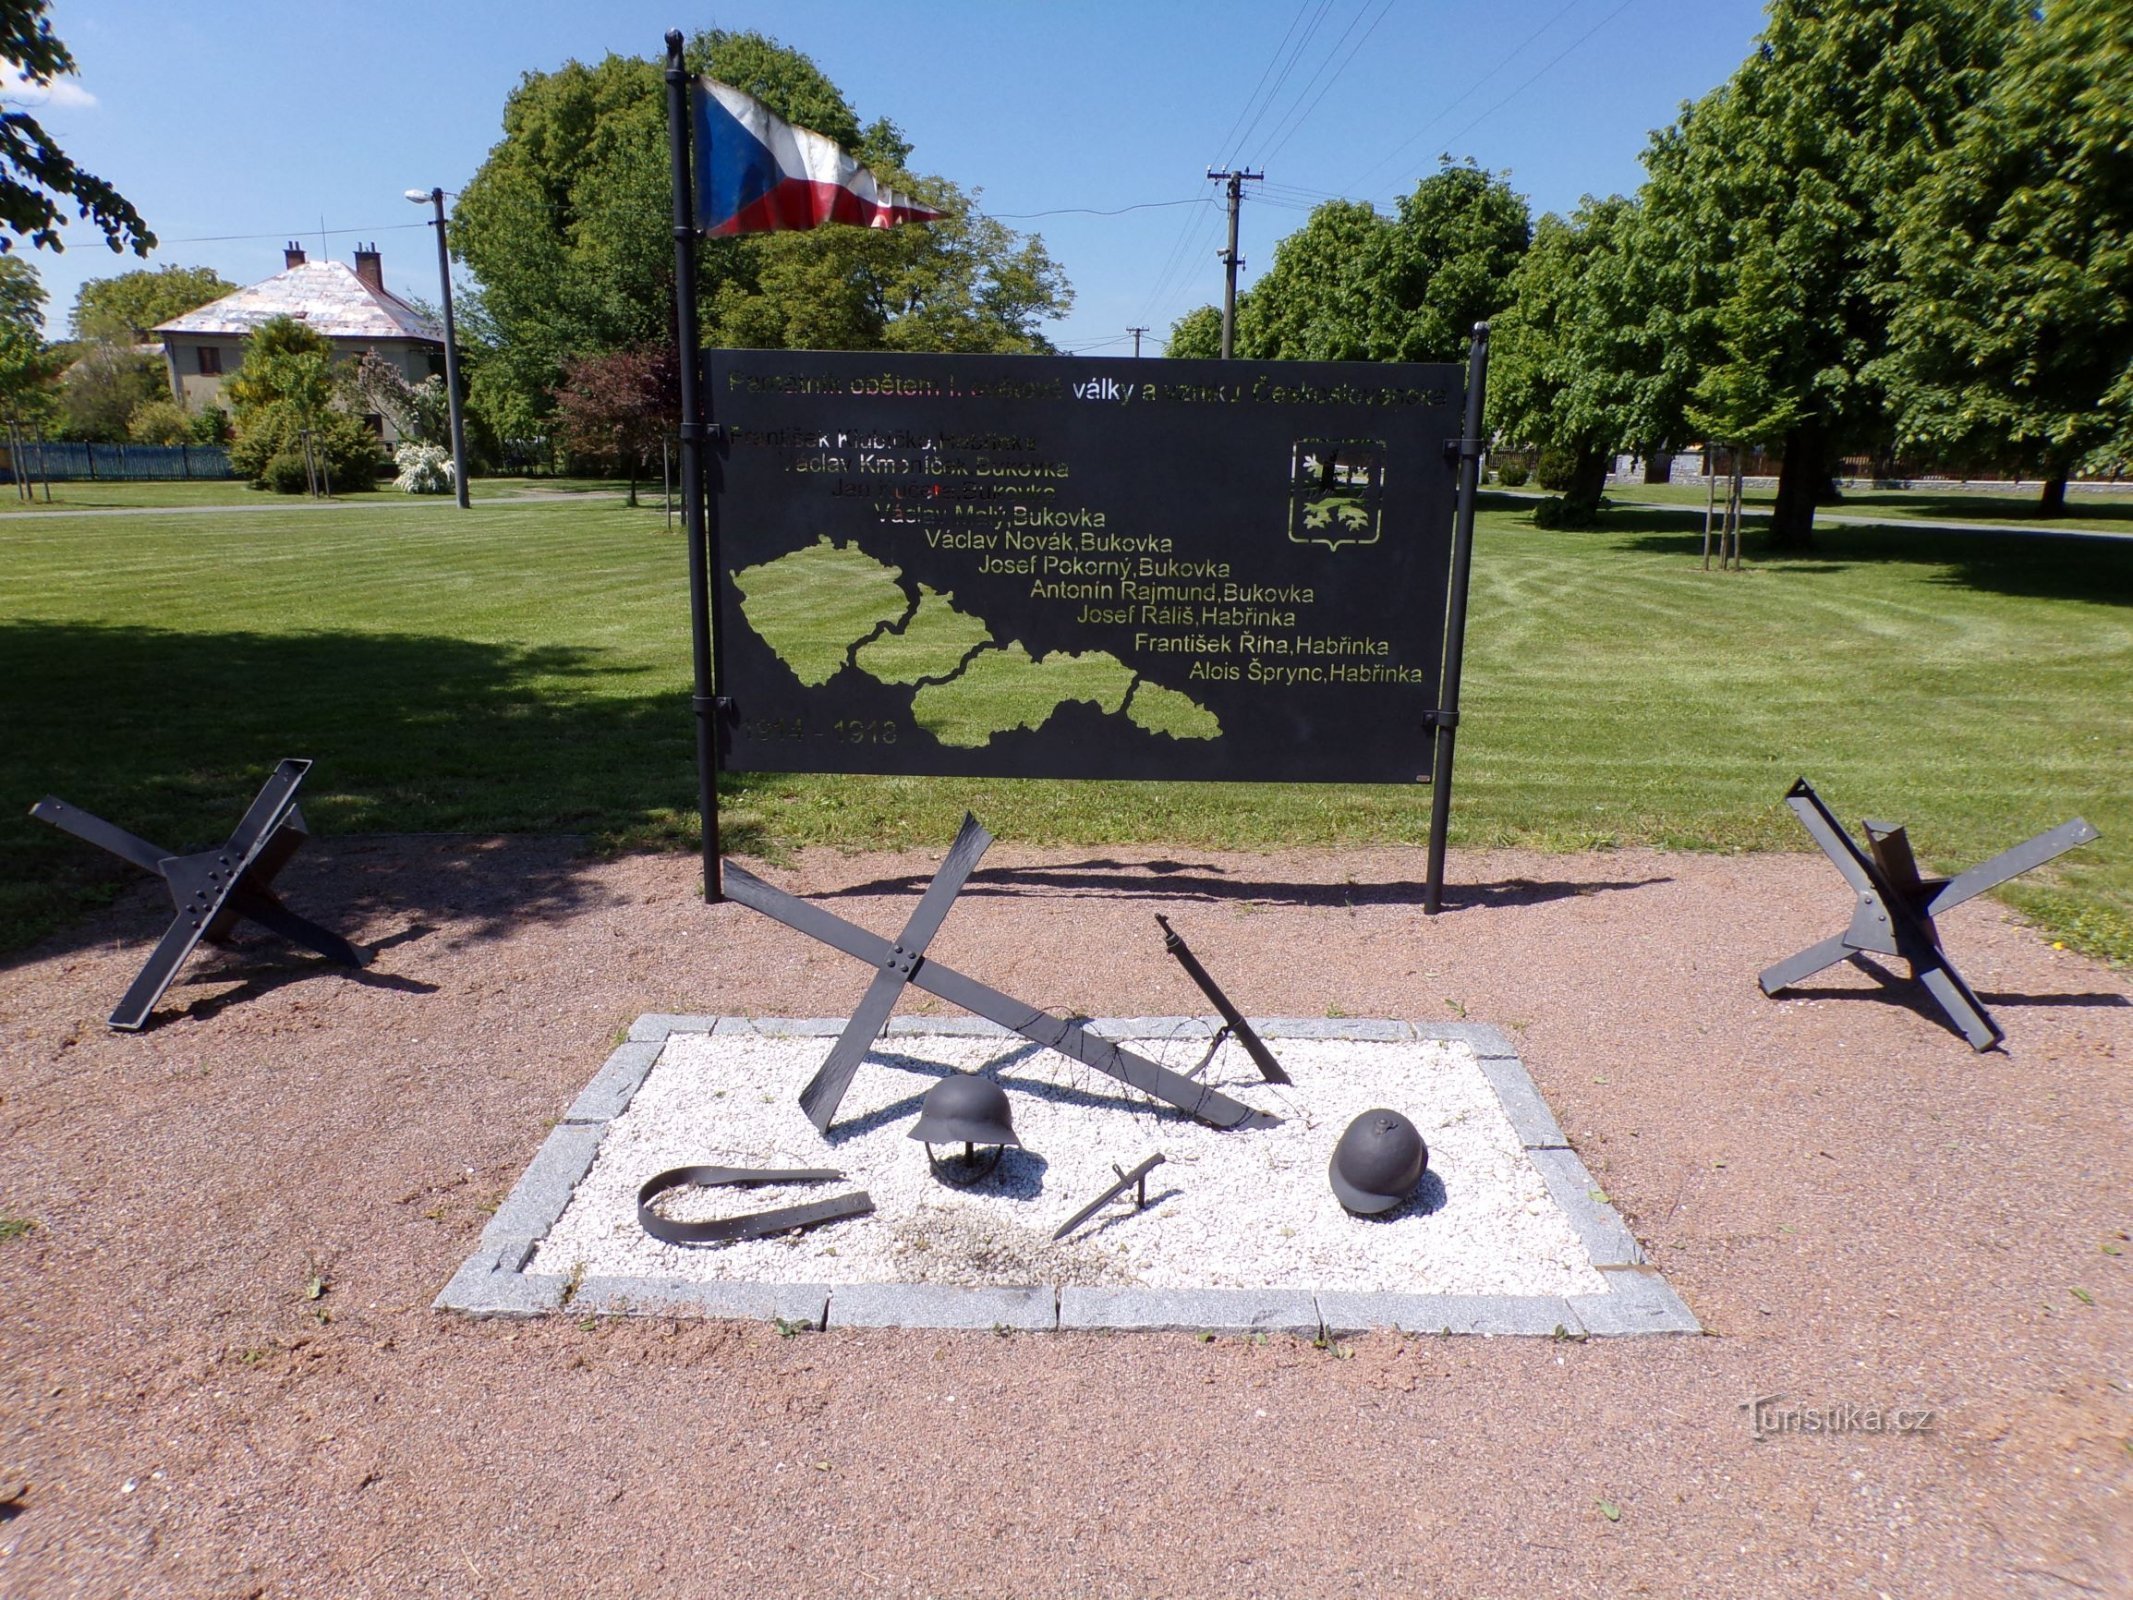 Az első világháború áldozatainak és Csehszlovákia létrejöttének emlékműve (Habřinka, 1. június 3.6.2021.)